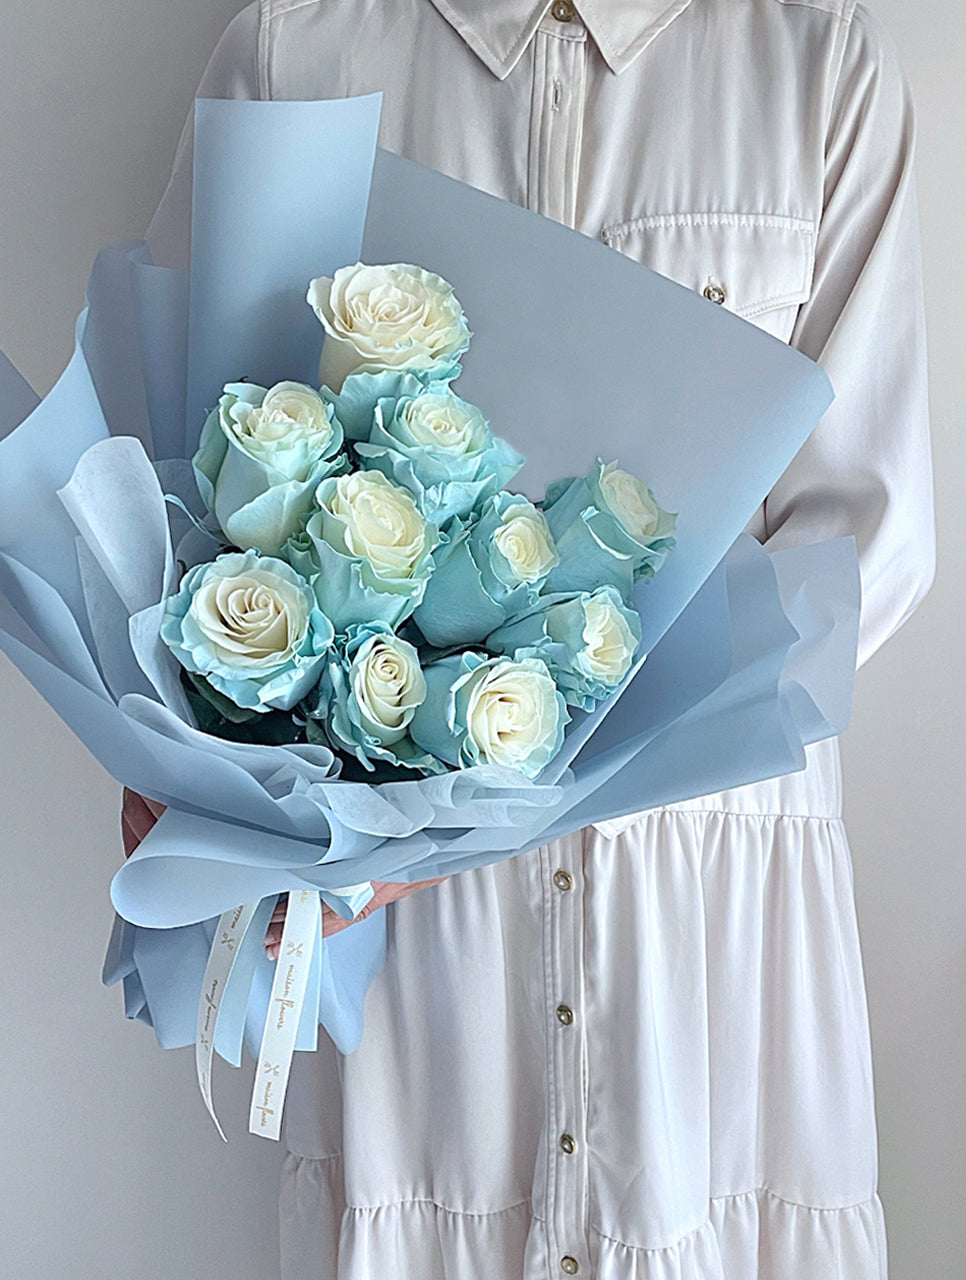 冰藍玫瑰花束, 藍玫瑰, Blue rose bouquet